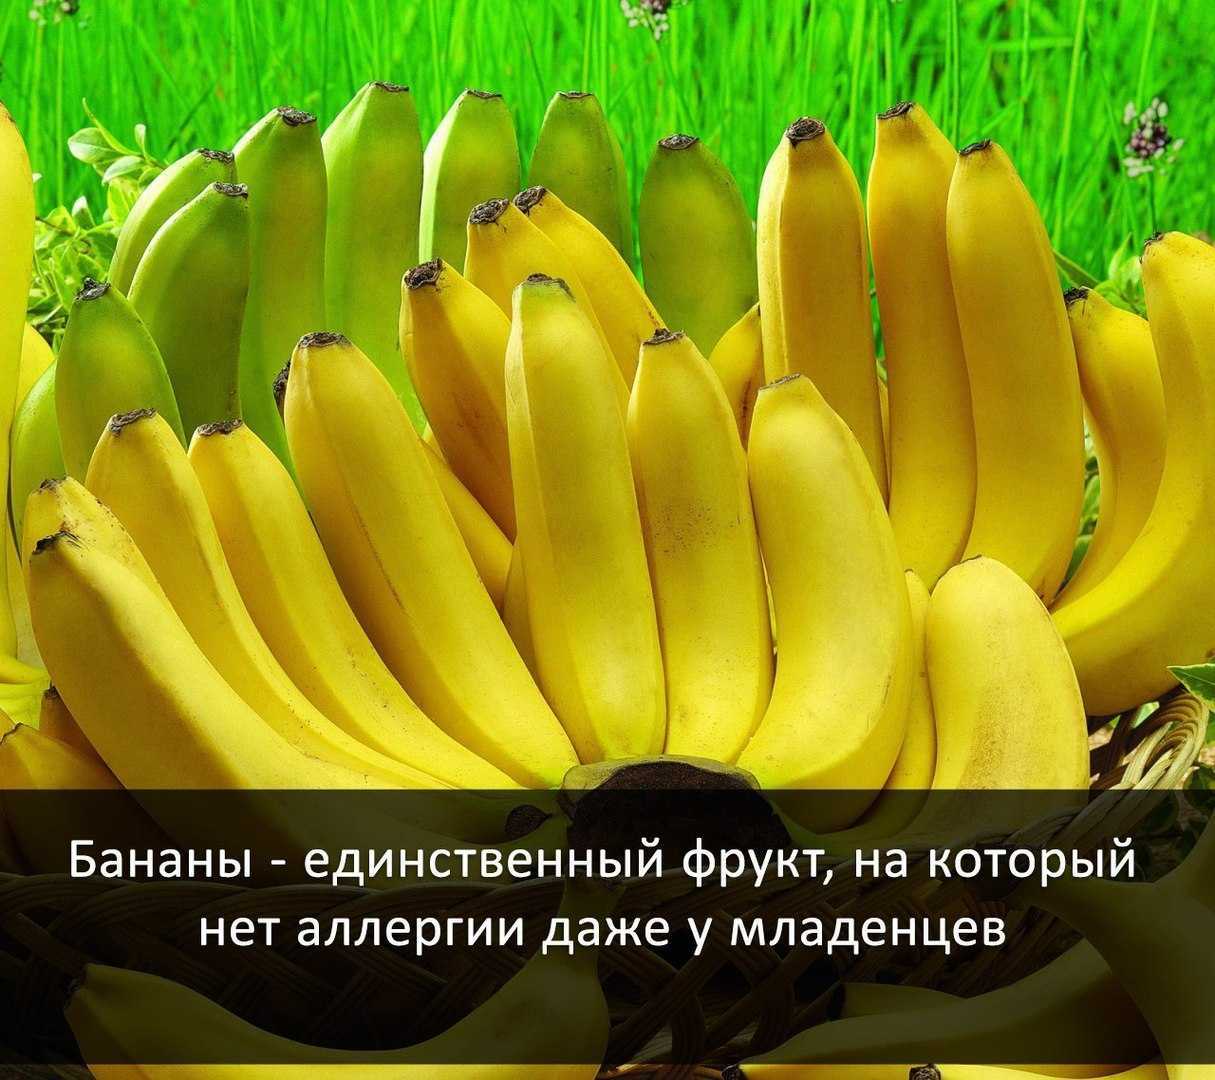 Польза банана для организма человека - возможный вред